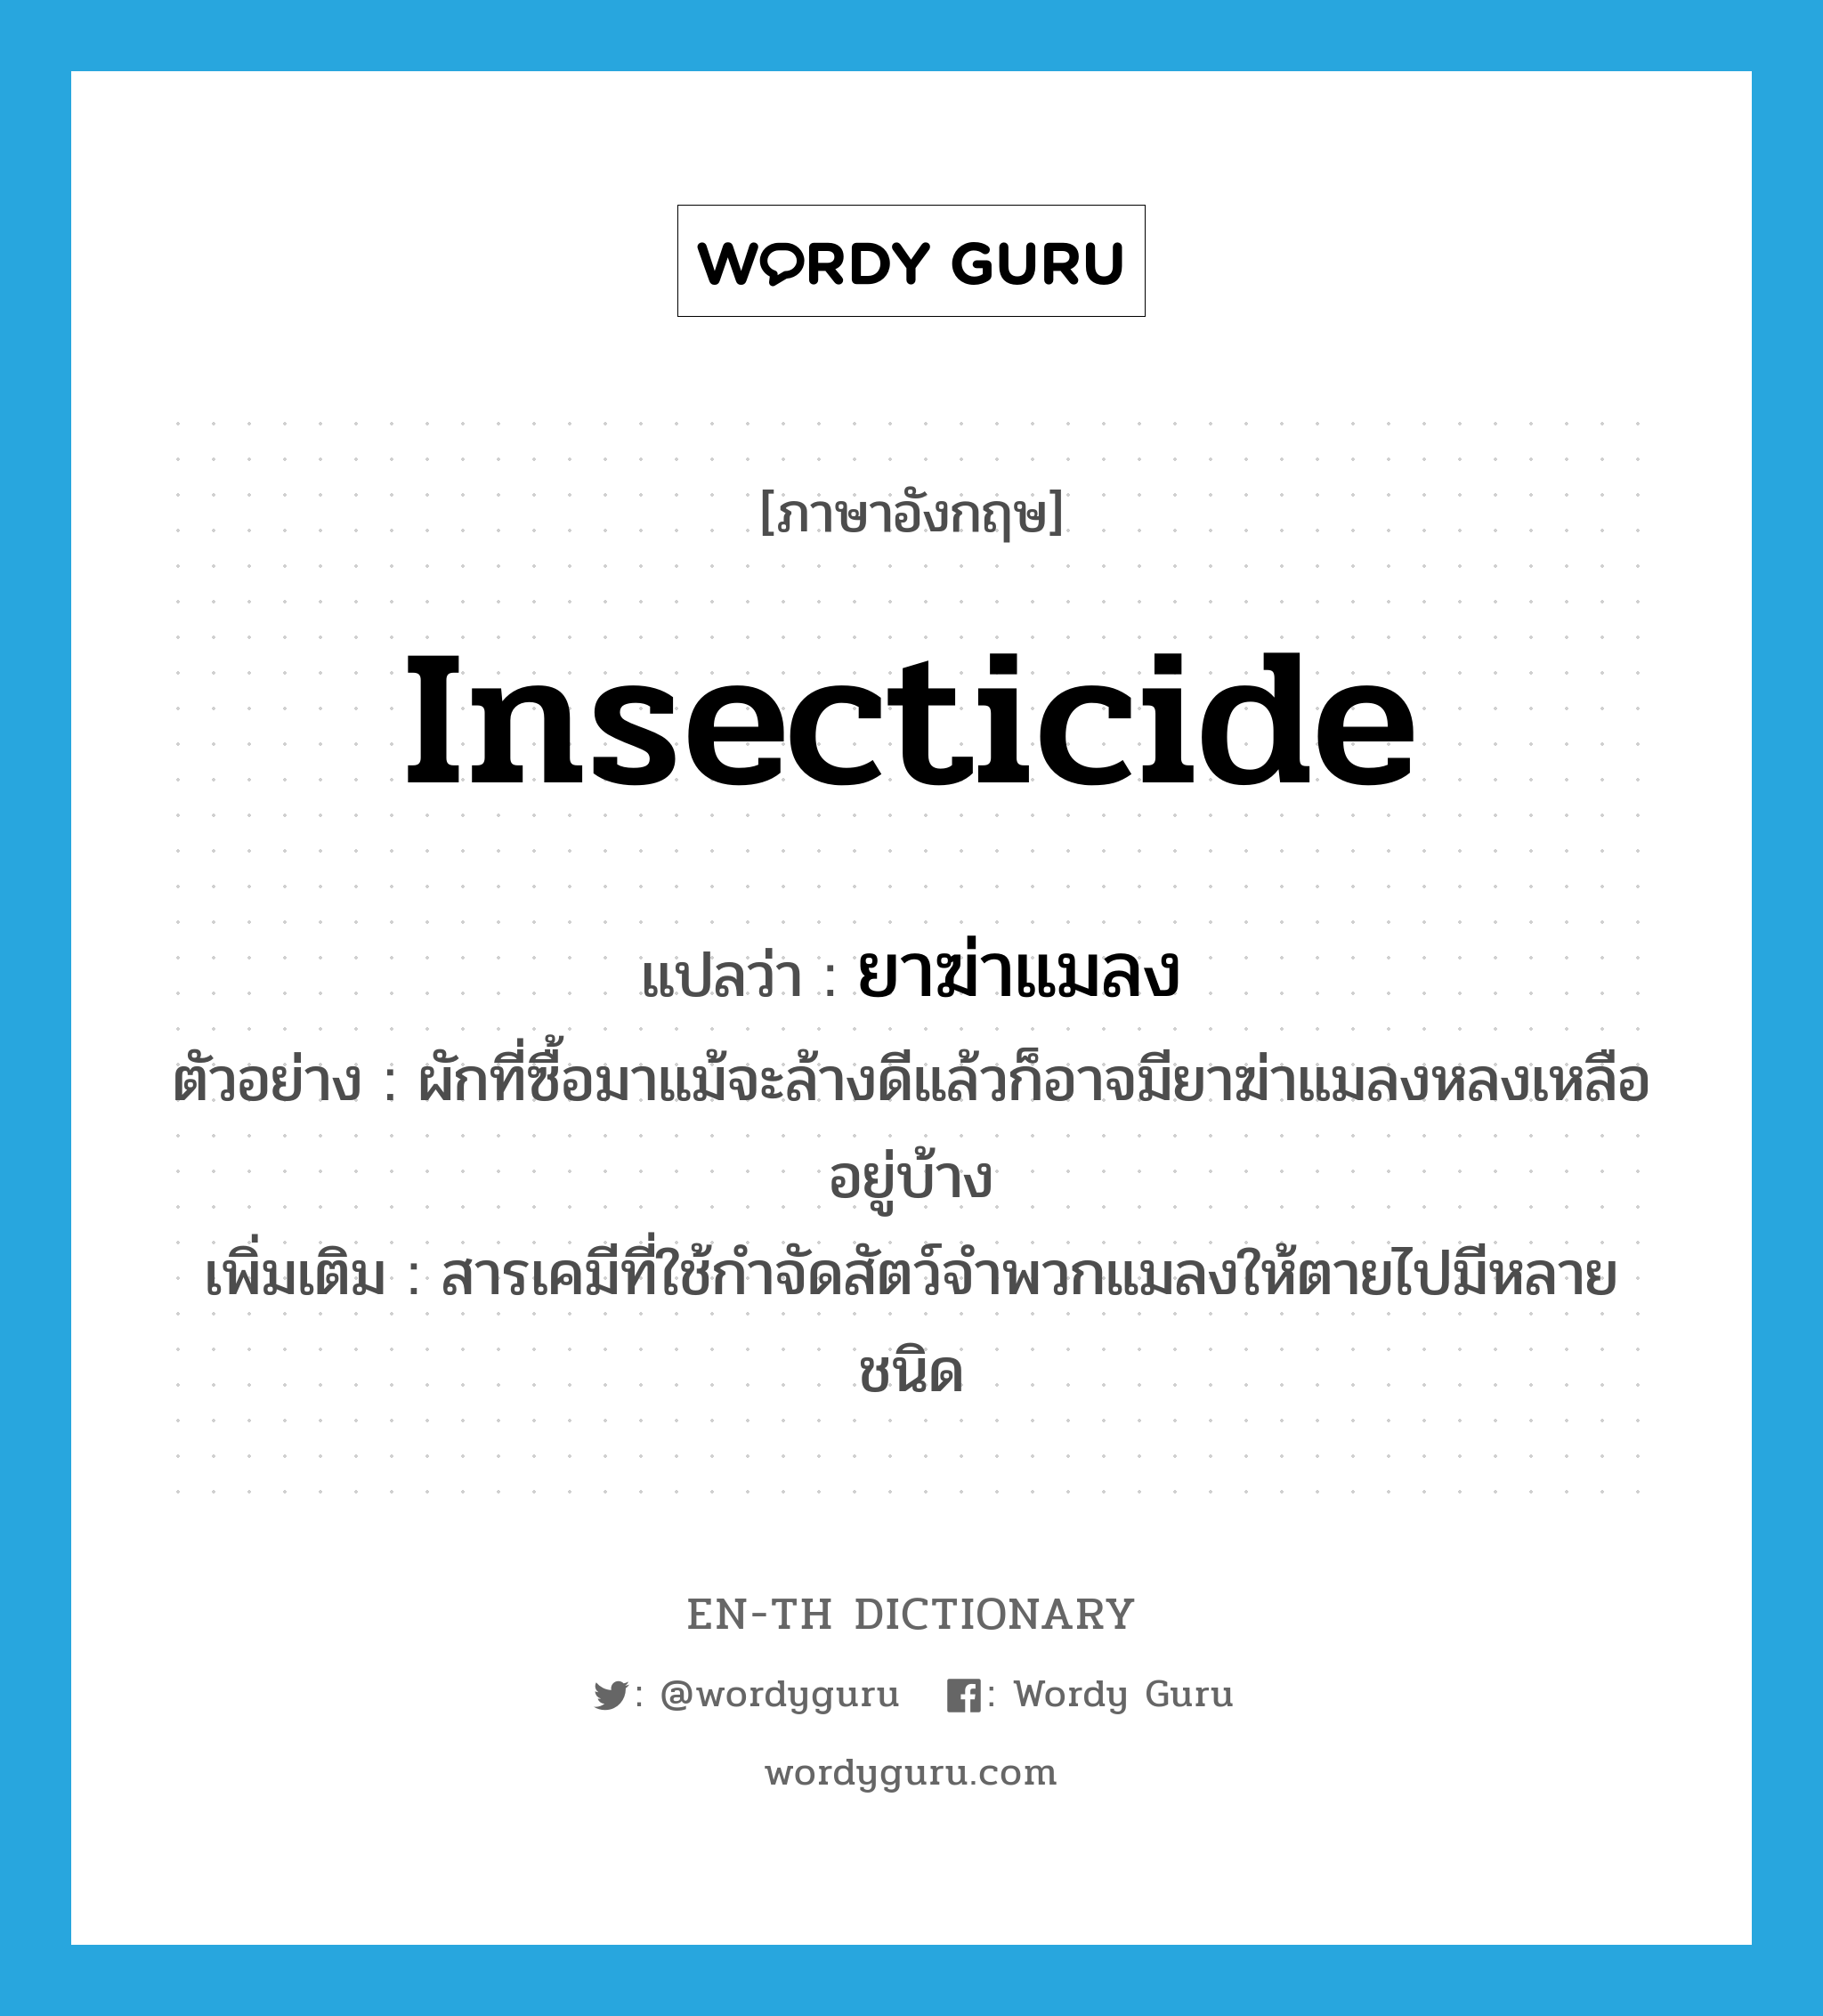 insecticide แปลว่า?, คำศัพท์ภาษาอังกฤษ insecticide แปลว่า ยาฆ่าแมลง ประเภท N ตัวอย่าง ผักที่ซื้อมาแม้จะล้างดีแล้วก็อาจมียาฆ่าแมลงหลงเหลืออยู่บ้าง เพิ่มเติม สารเคมีที่ใช้กำจัดสัตว์จำพวกแมลงให้ตายไปมีหลายชนิด หมวด N